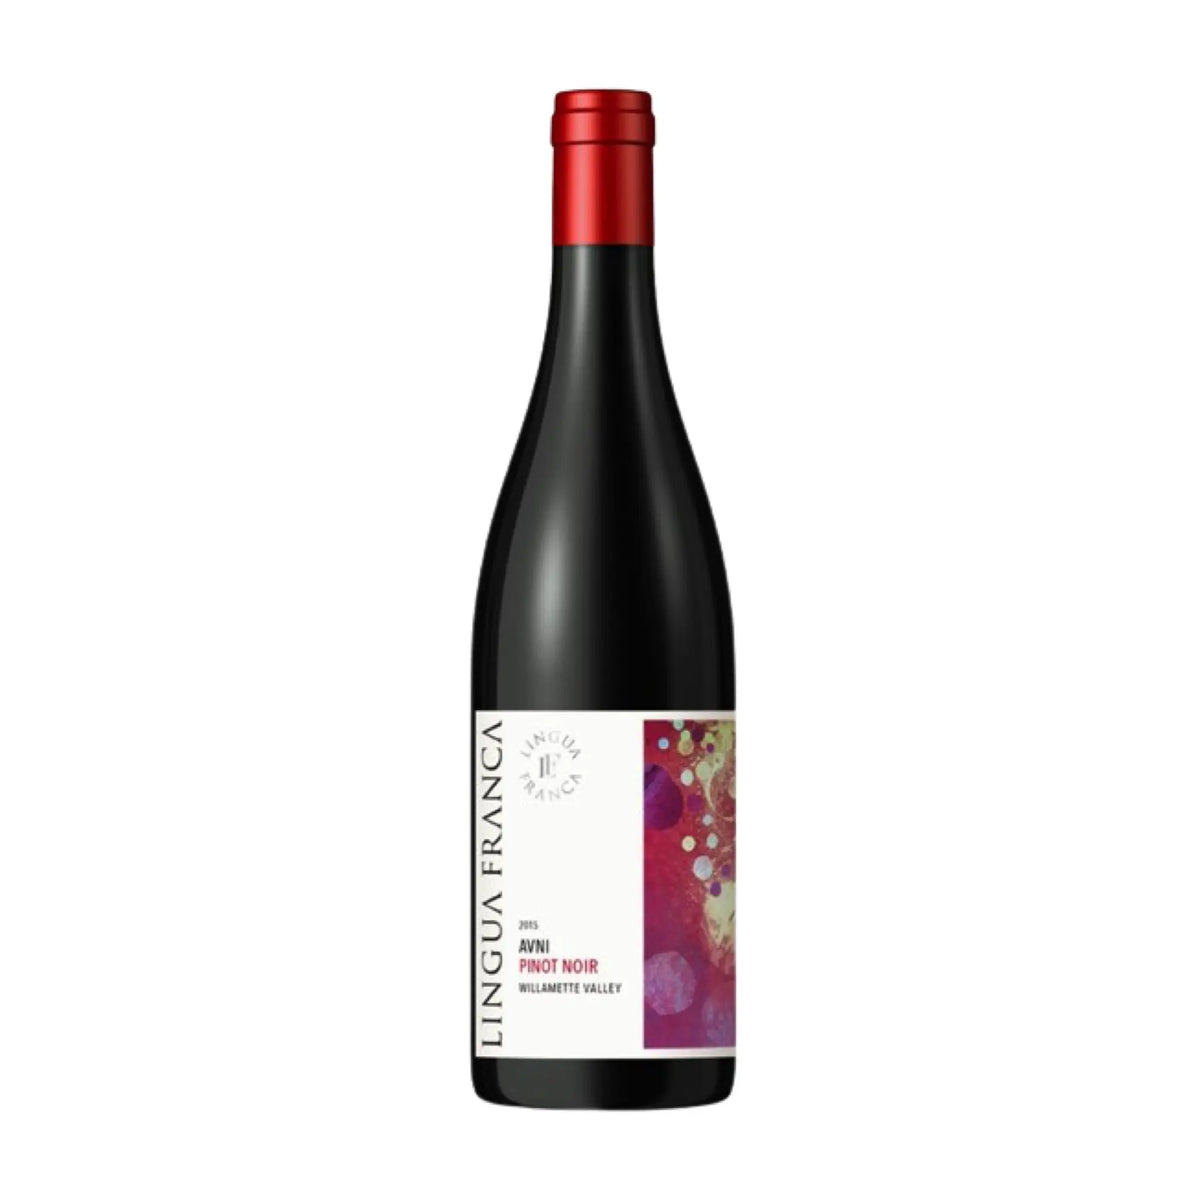 Domaine de la Cote-Rotwein-Pinot Noir-2020 DDLC Estate-WINECOM